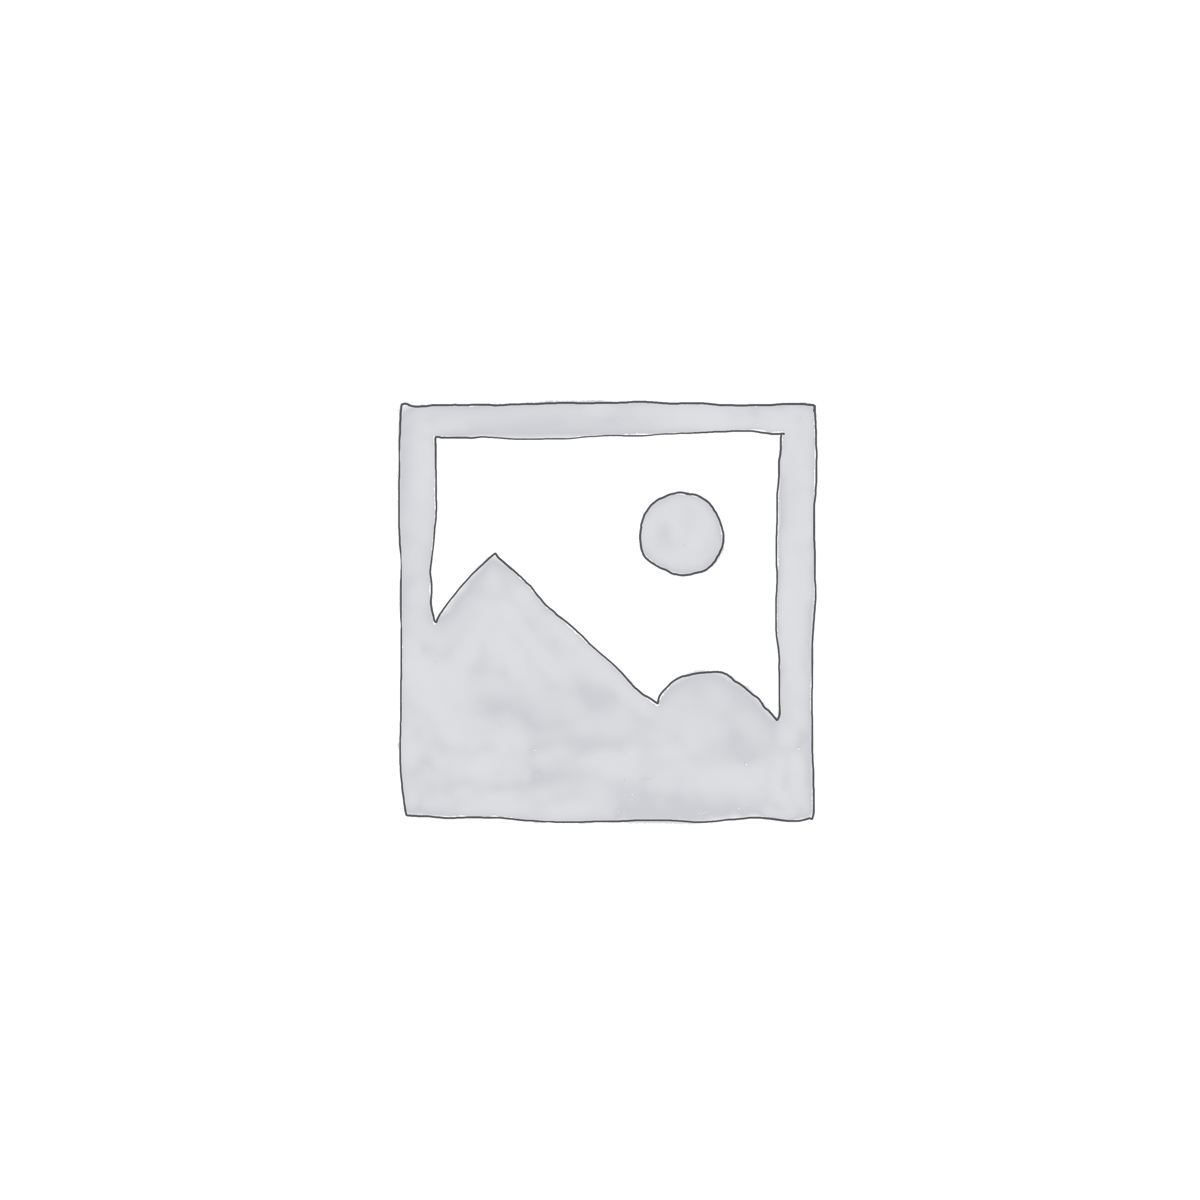 Recipe eBook Template for Canva – White Linen